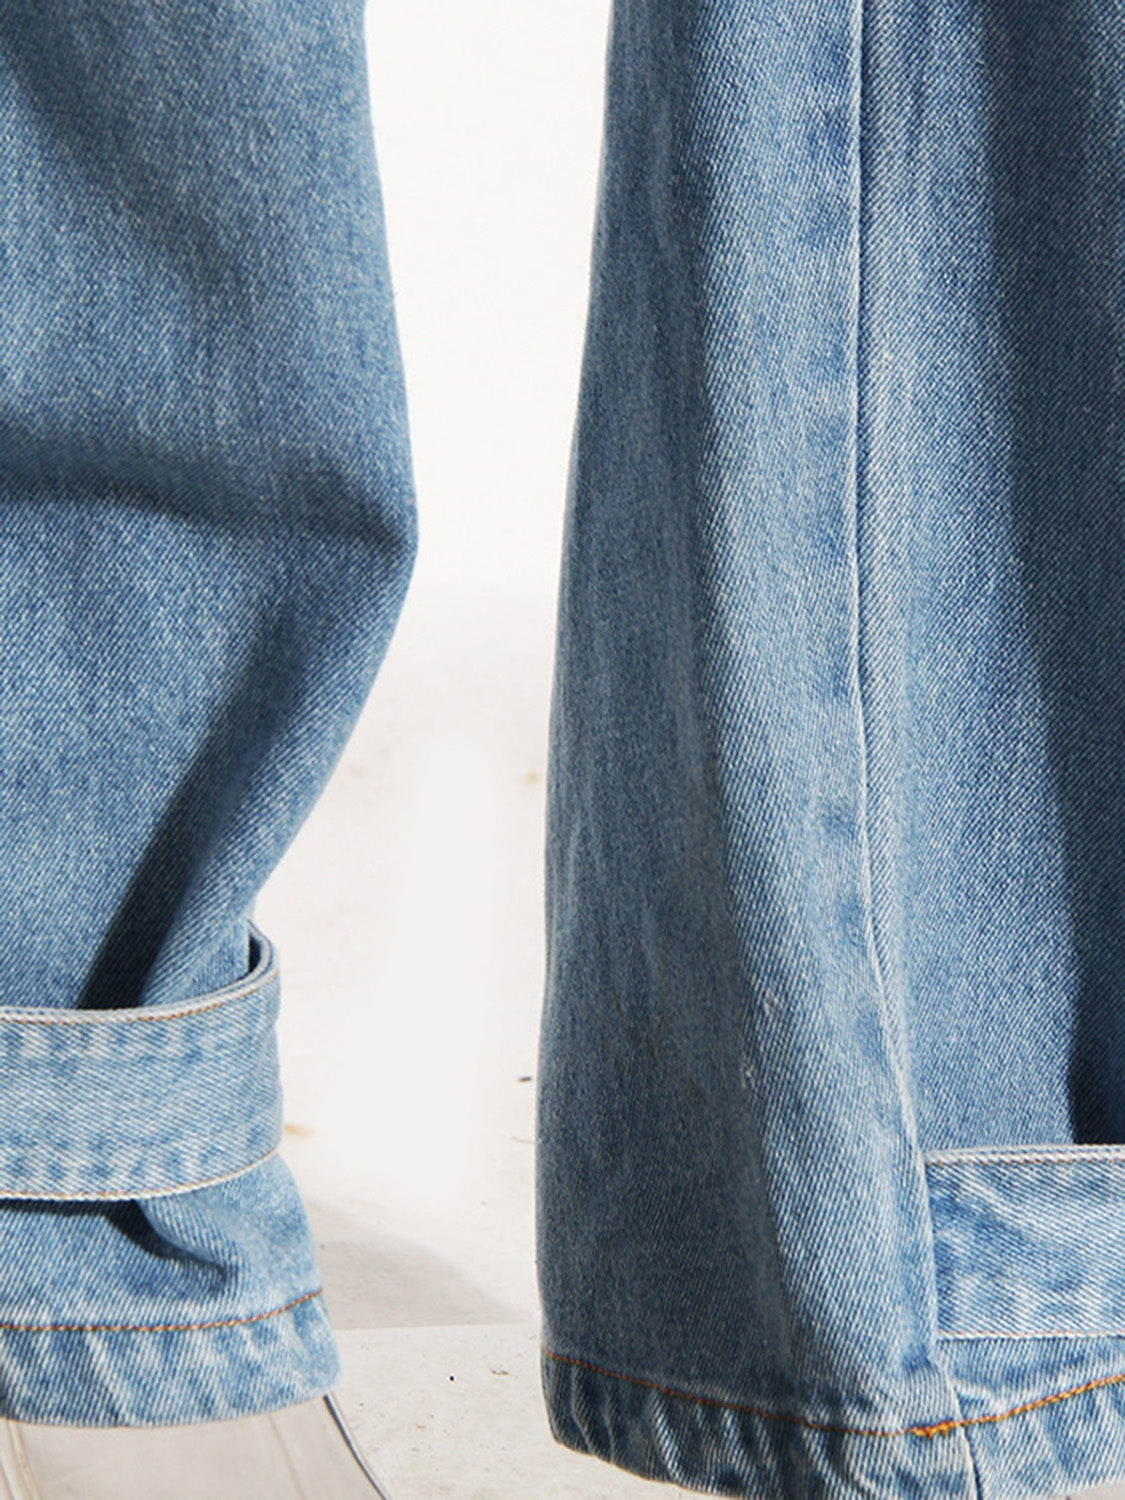 TEEK - Light Washed Wide Leg Cargo Jeans JEANS TEEK Trend   